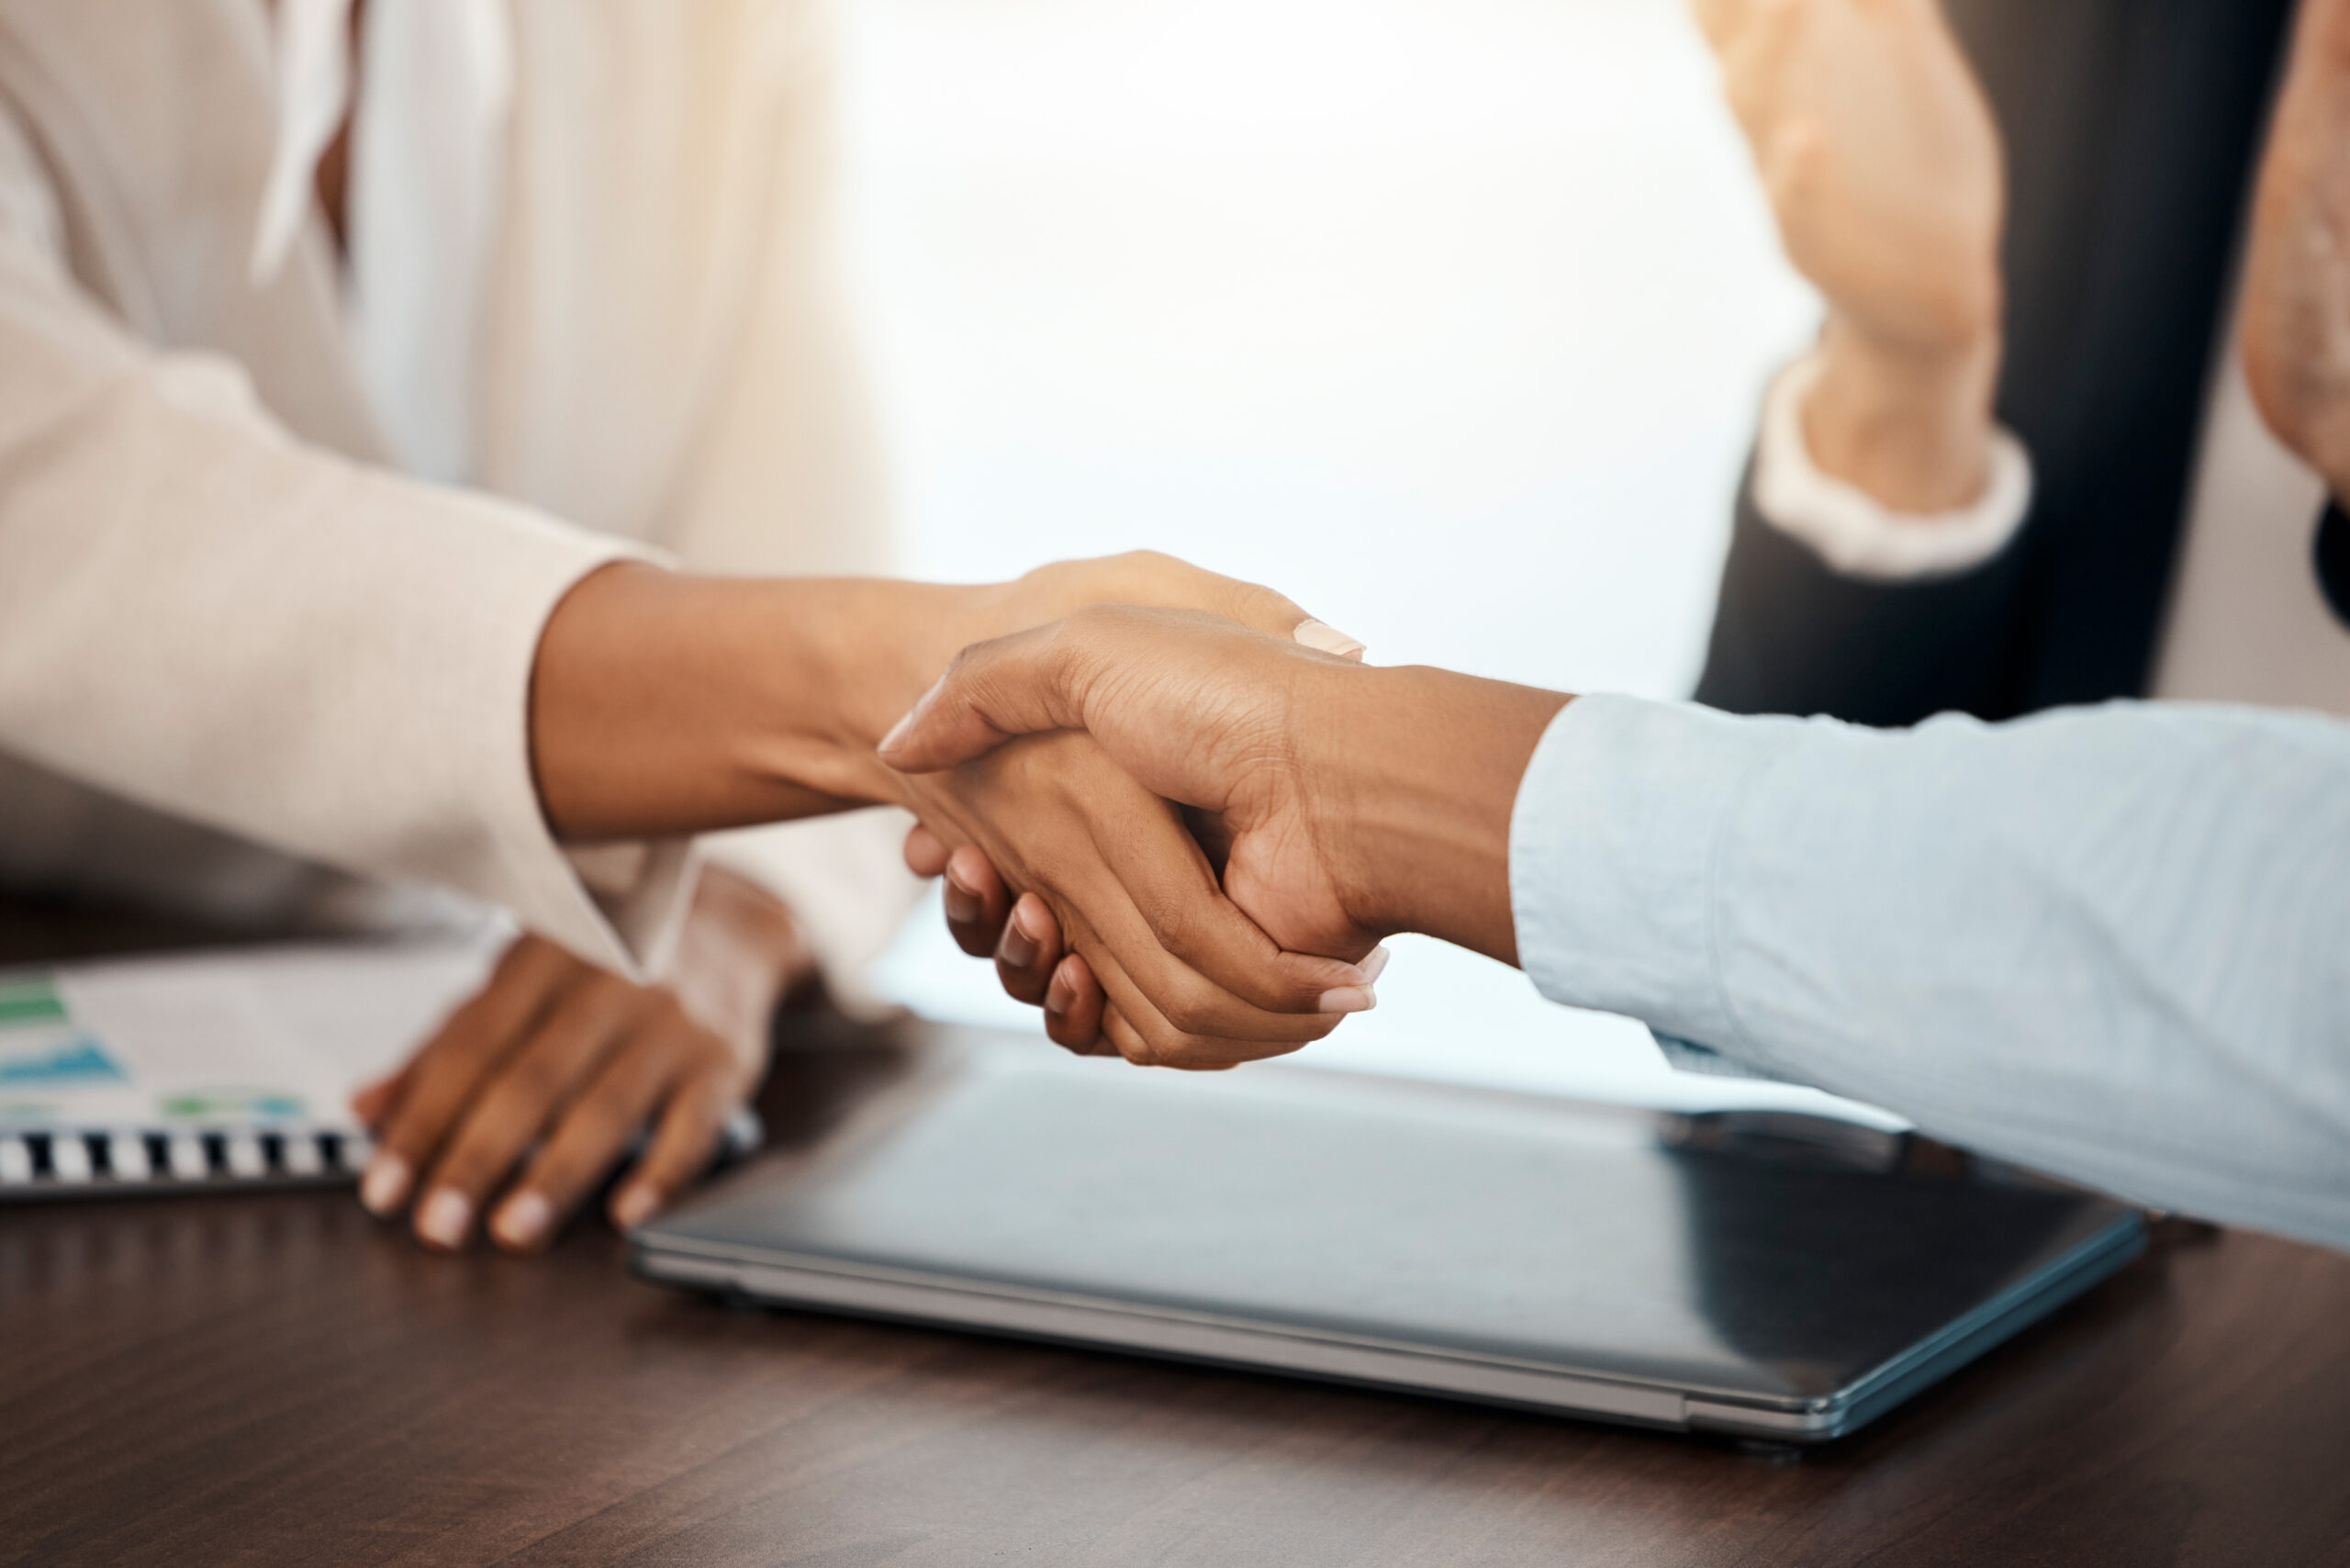 a handshake across a desk between 2 business people